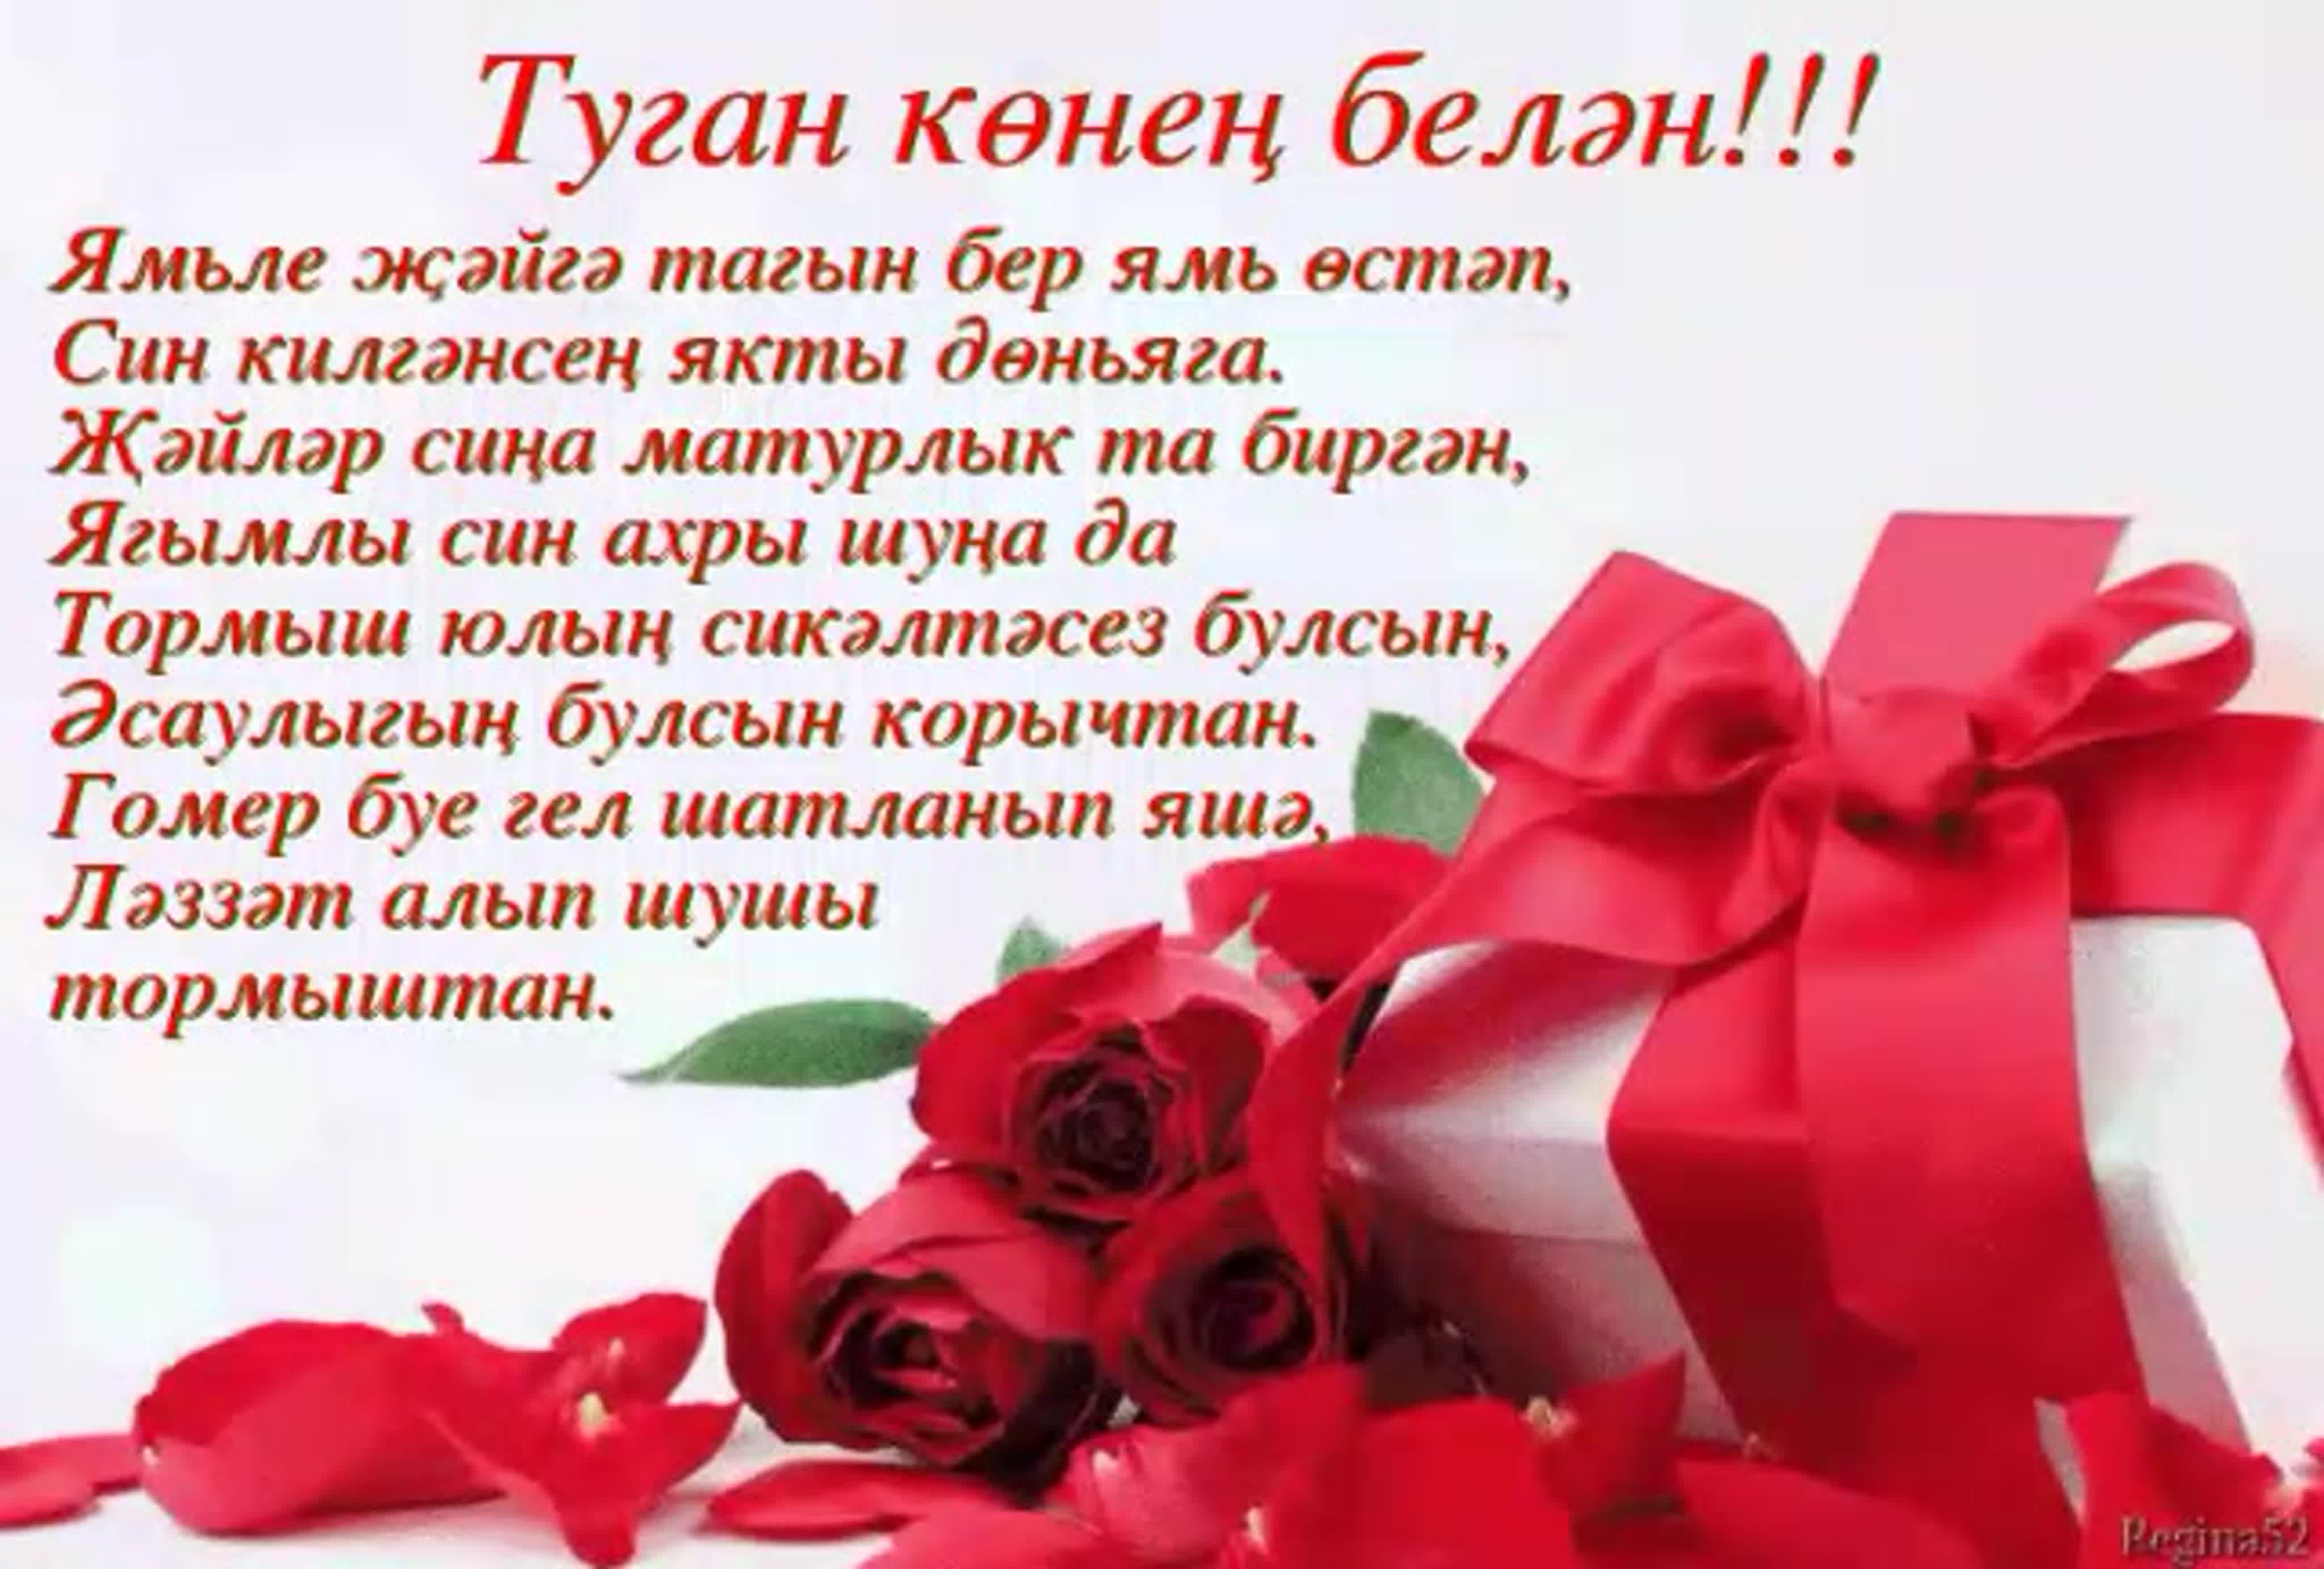 Татарские песни поздравления с днем рождения. Поздравления с днём с днём рождения на татарском языке. Поздравления с днём рождения женщине на татарском языке. Туган кон. С днём рождения на татарском языке женщине красивые пожеланиями.